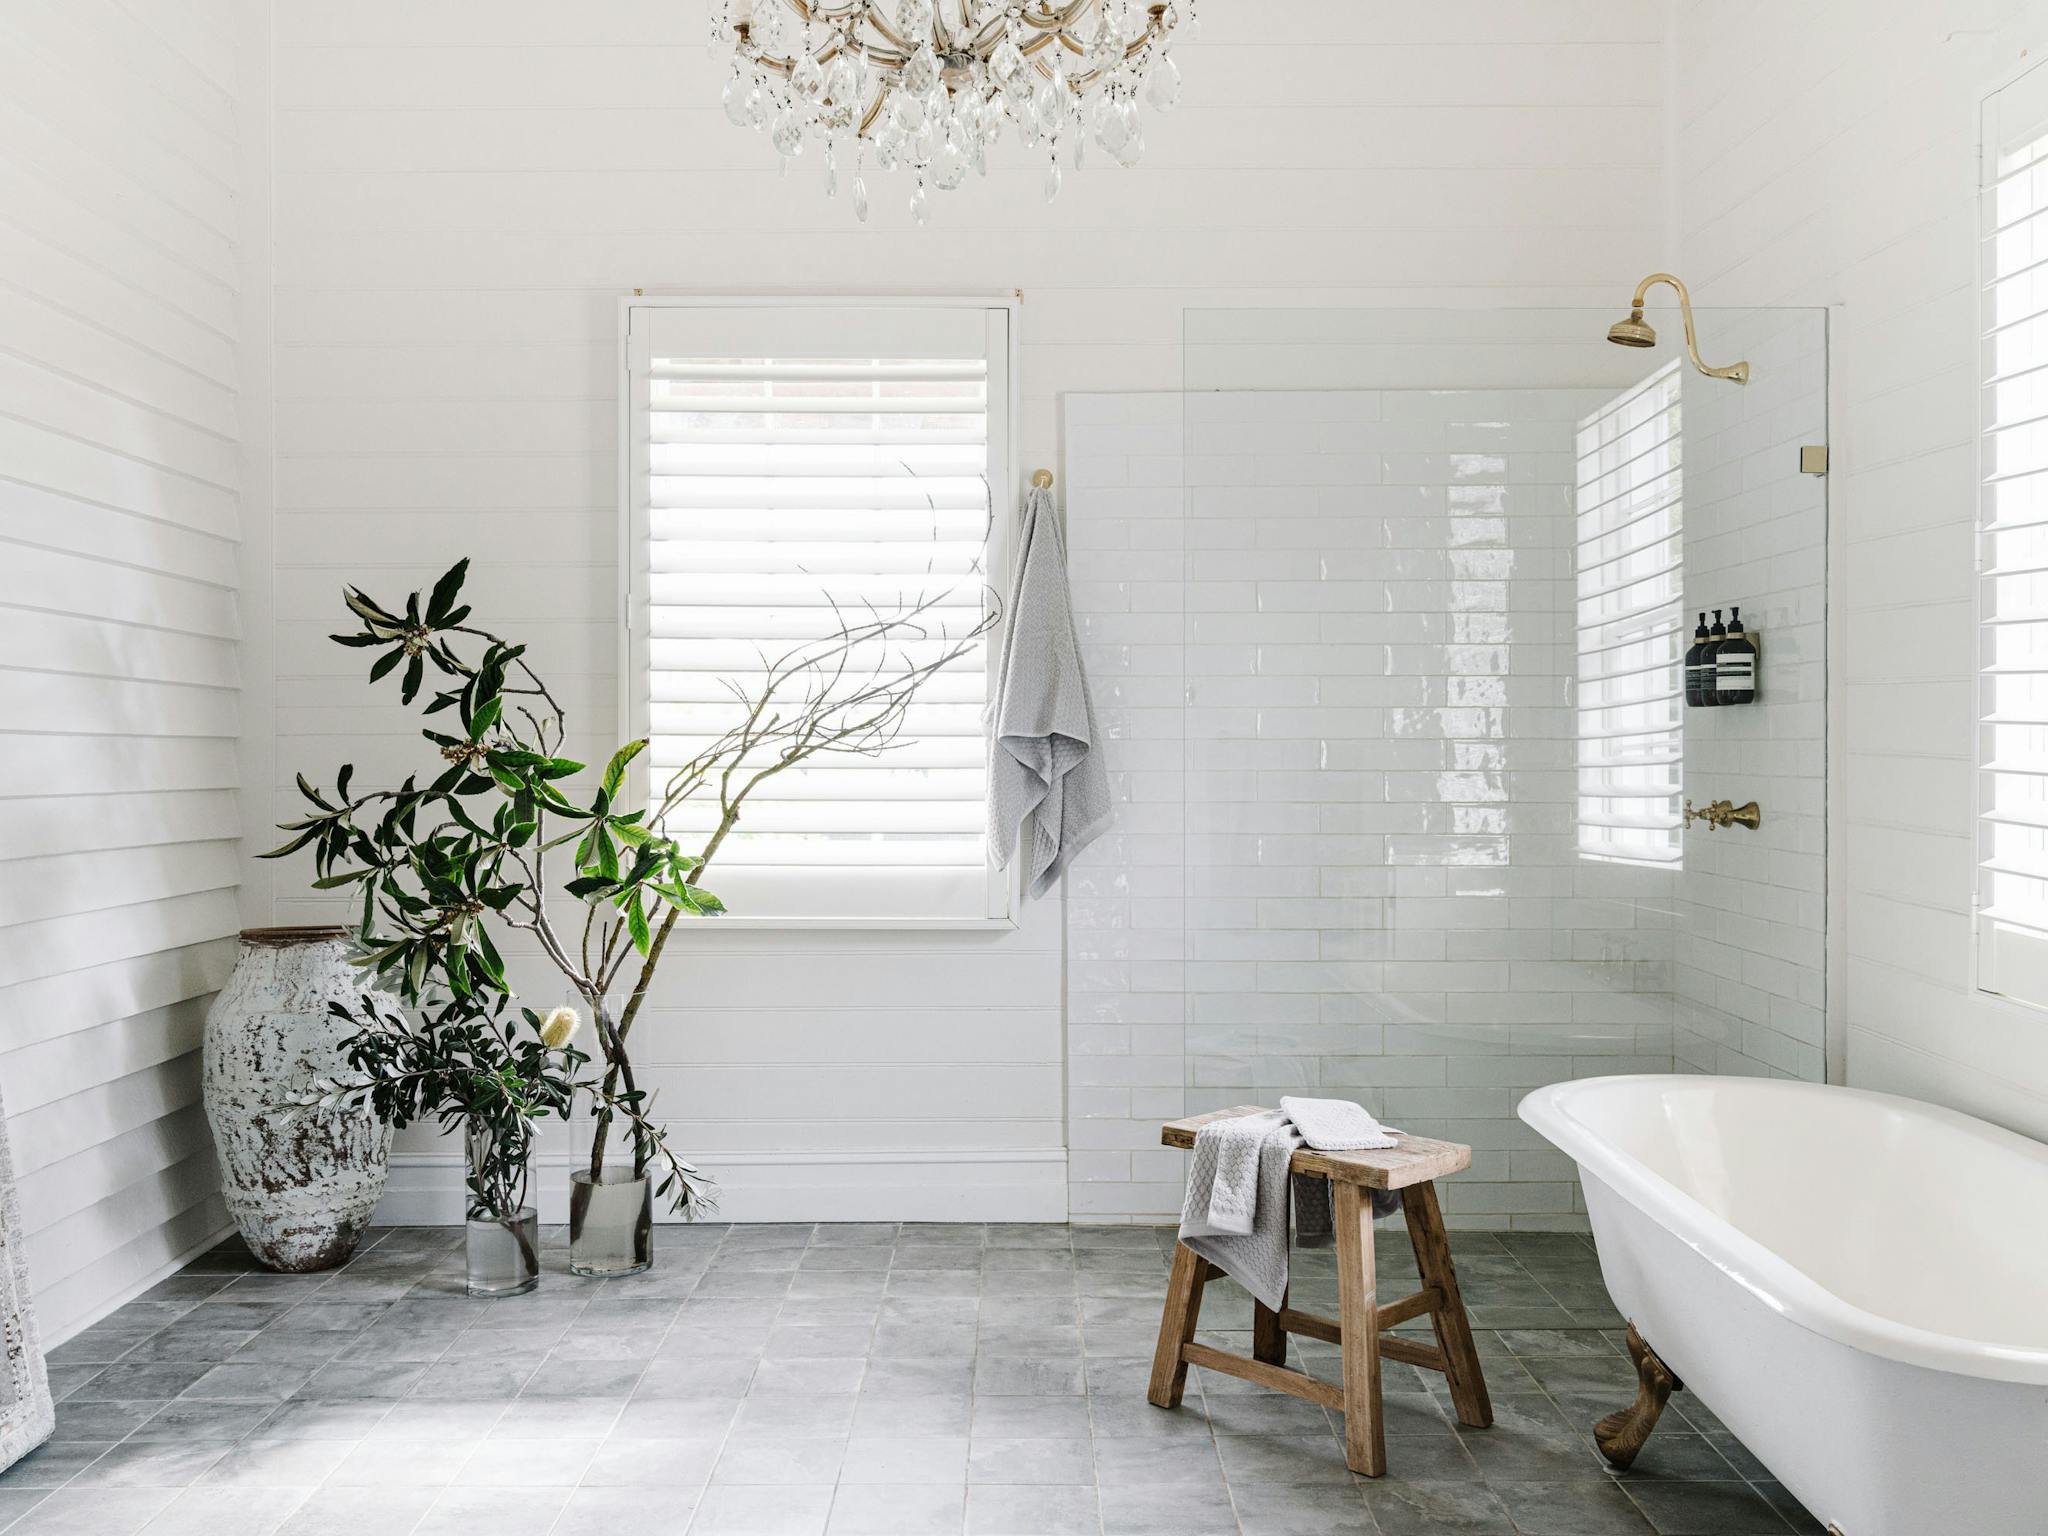 Rustic luxury bathroom with shower and bathtub